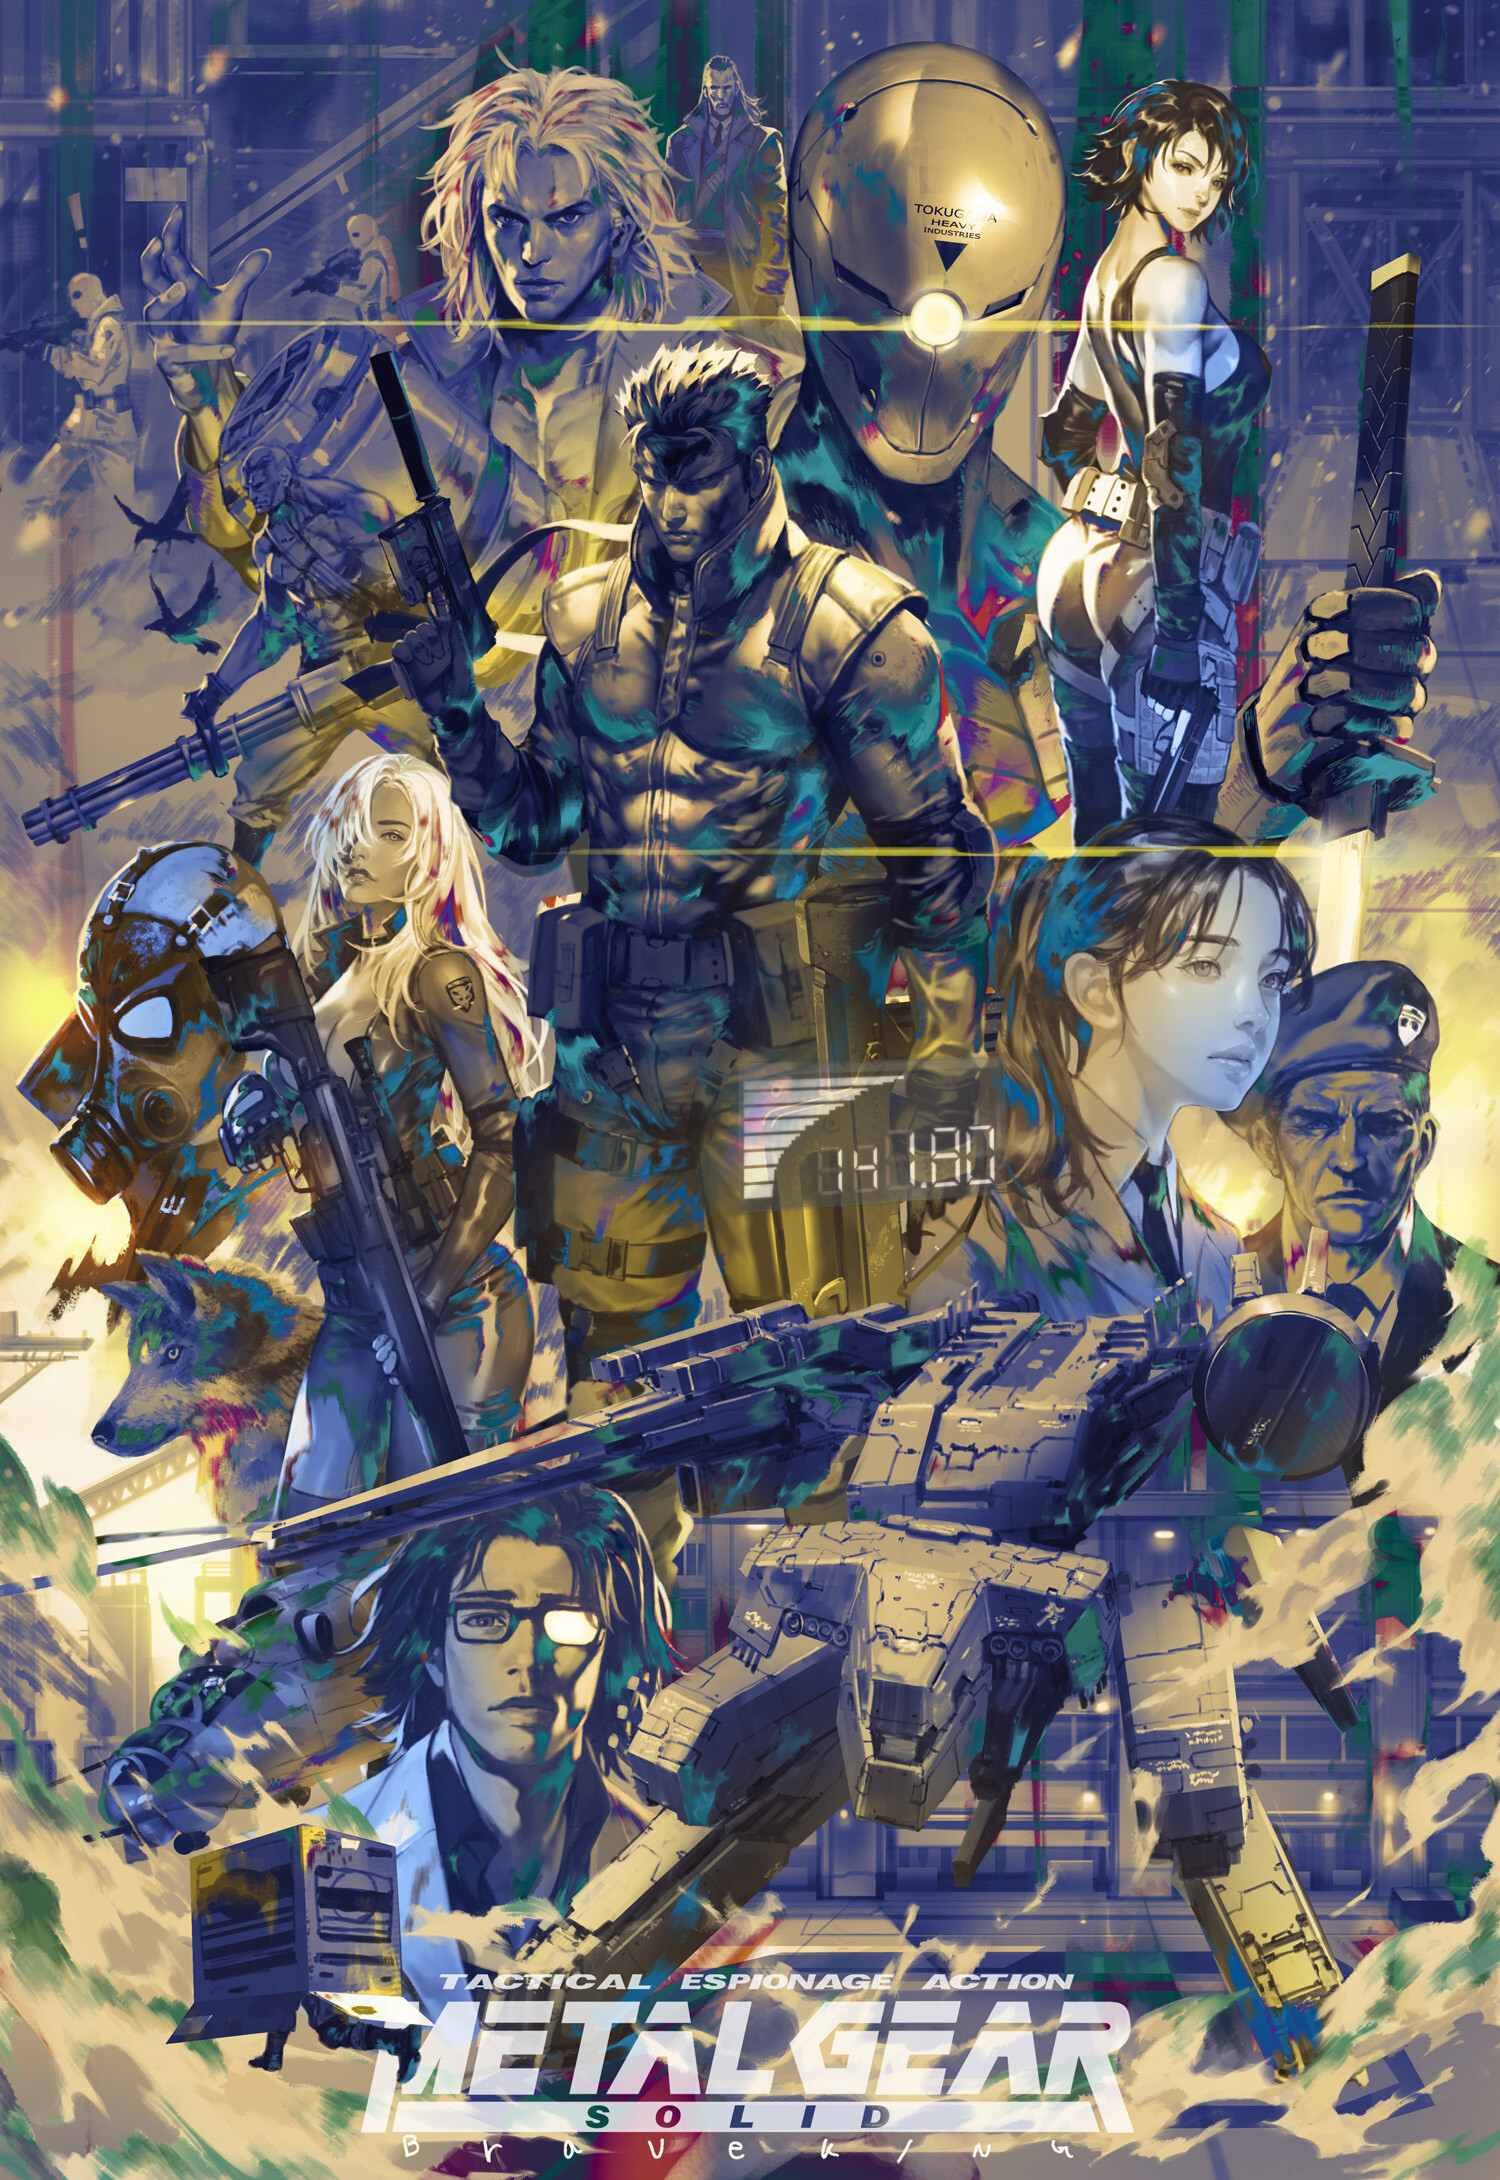 Fantasy Art Artwork Metal Gear Solid Video Game Art 1500x2180